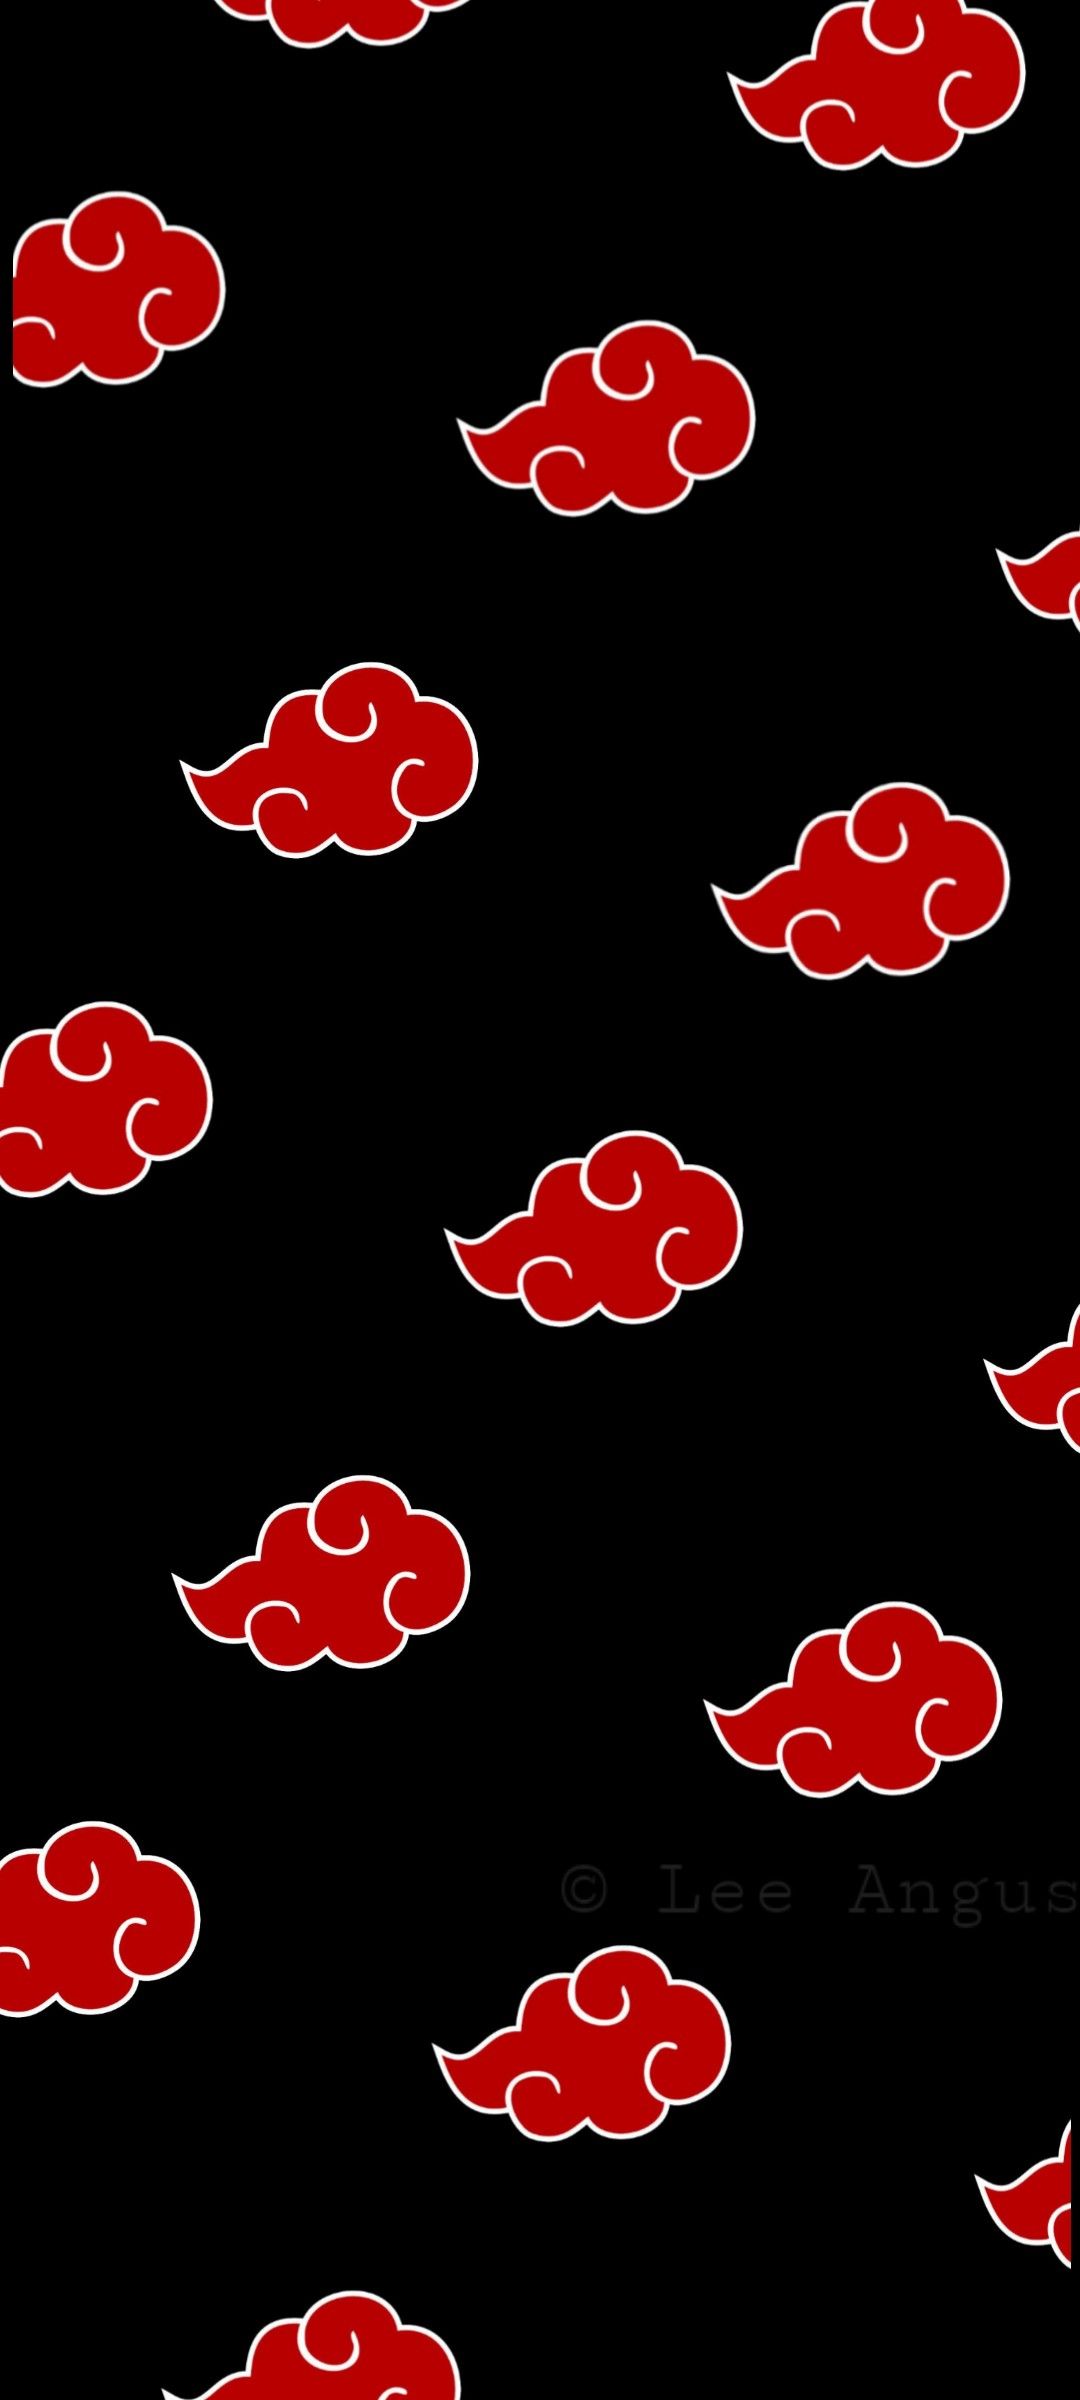 Akatsuki cloud wallpaper icon em 2020. Nuvem vermelha, Akatsuki wallpaper, Papel de parede de livro